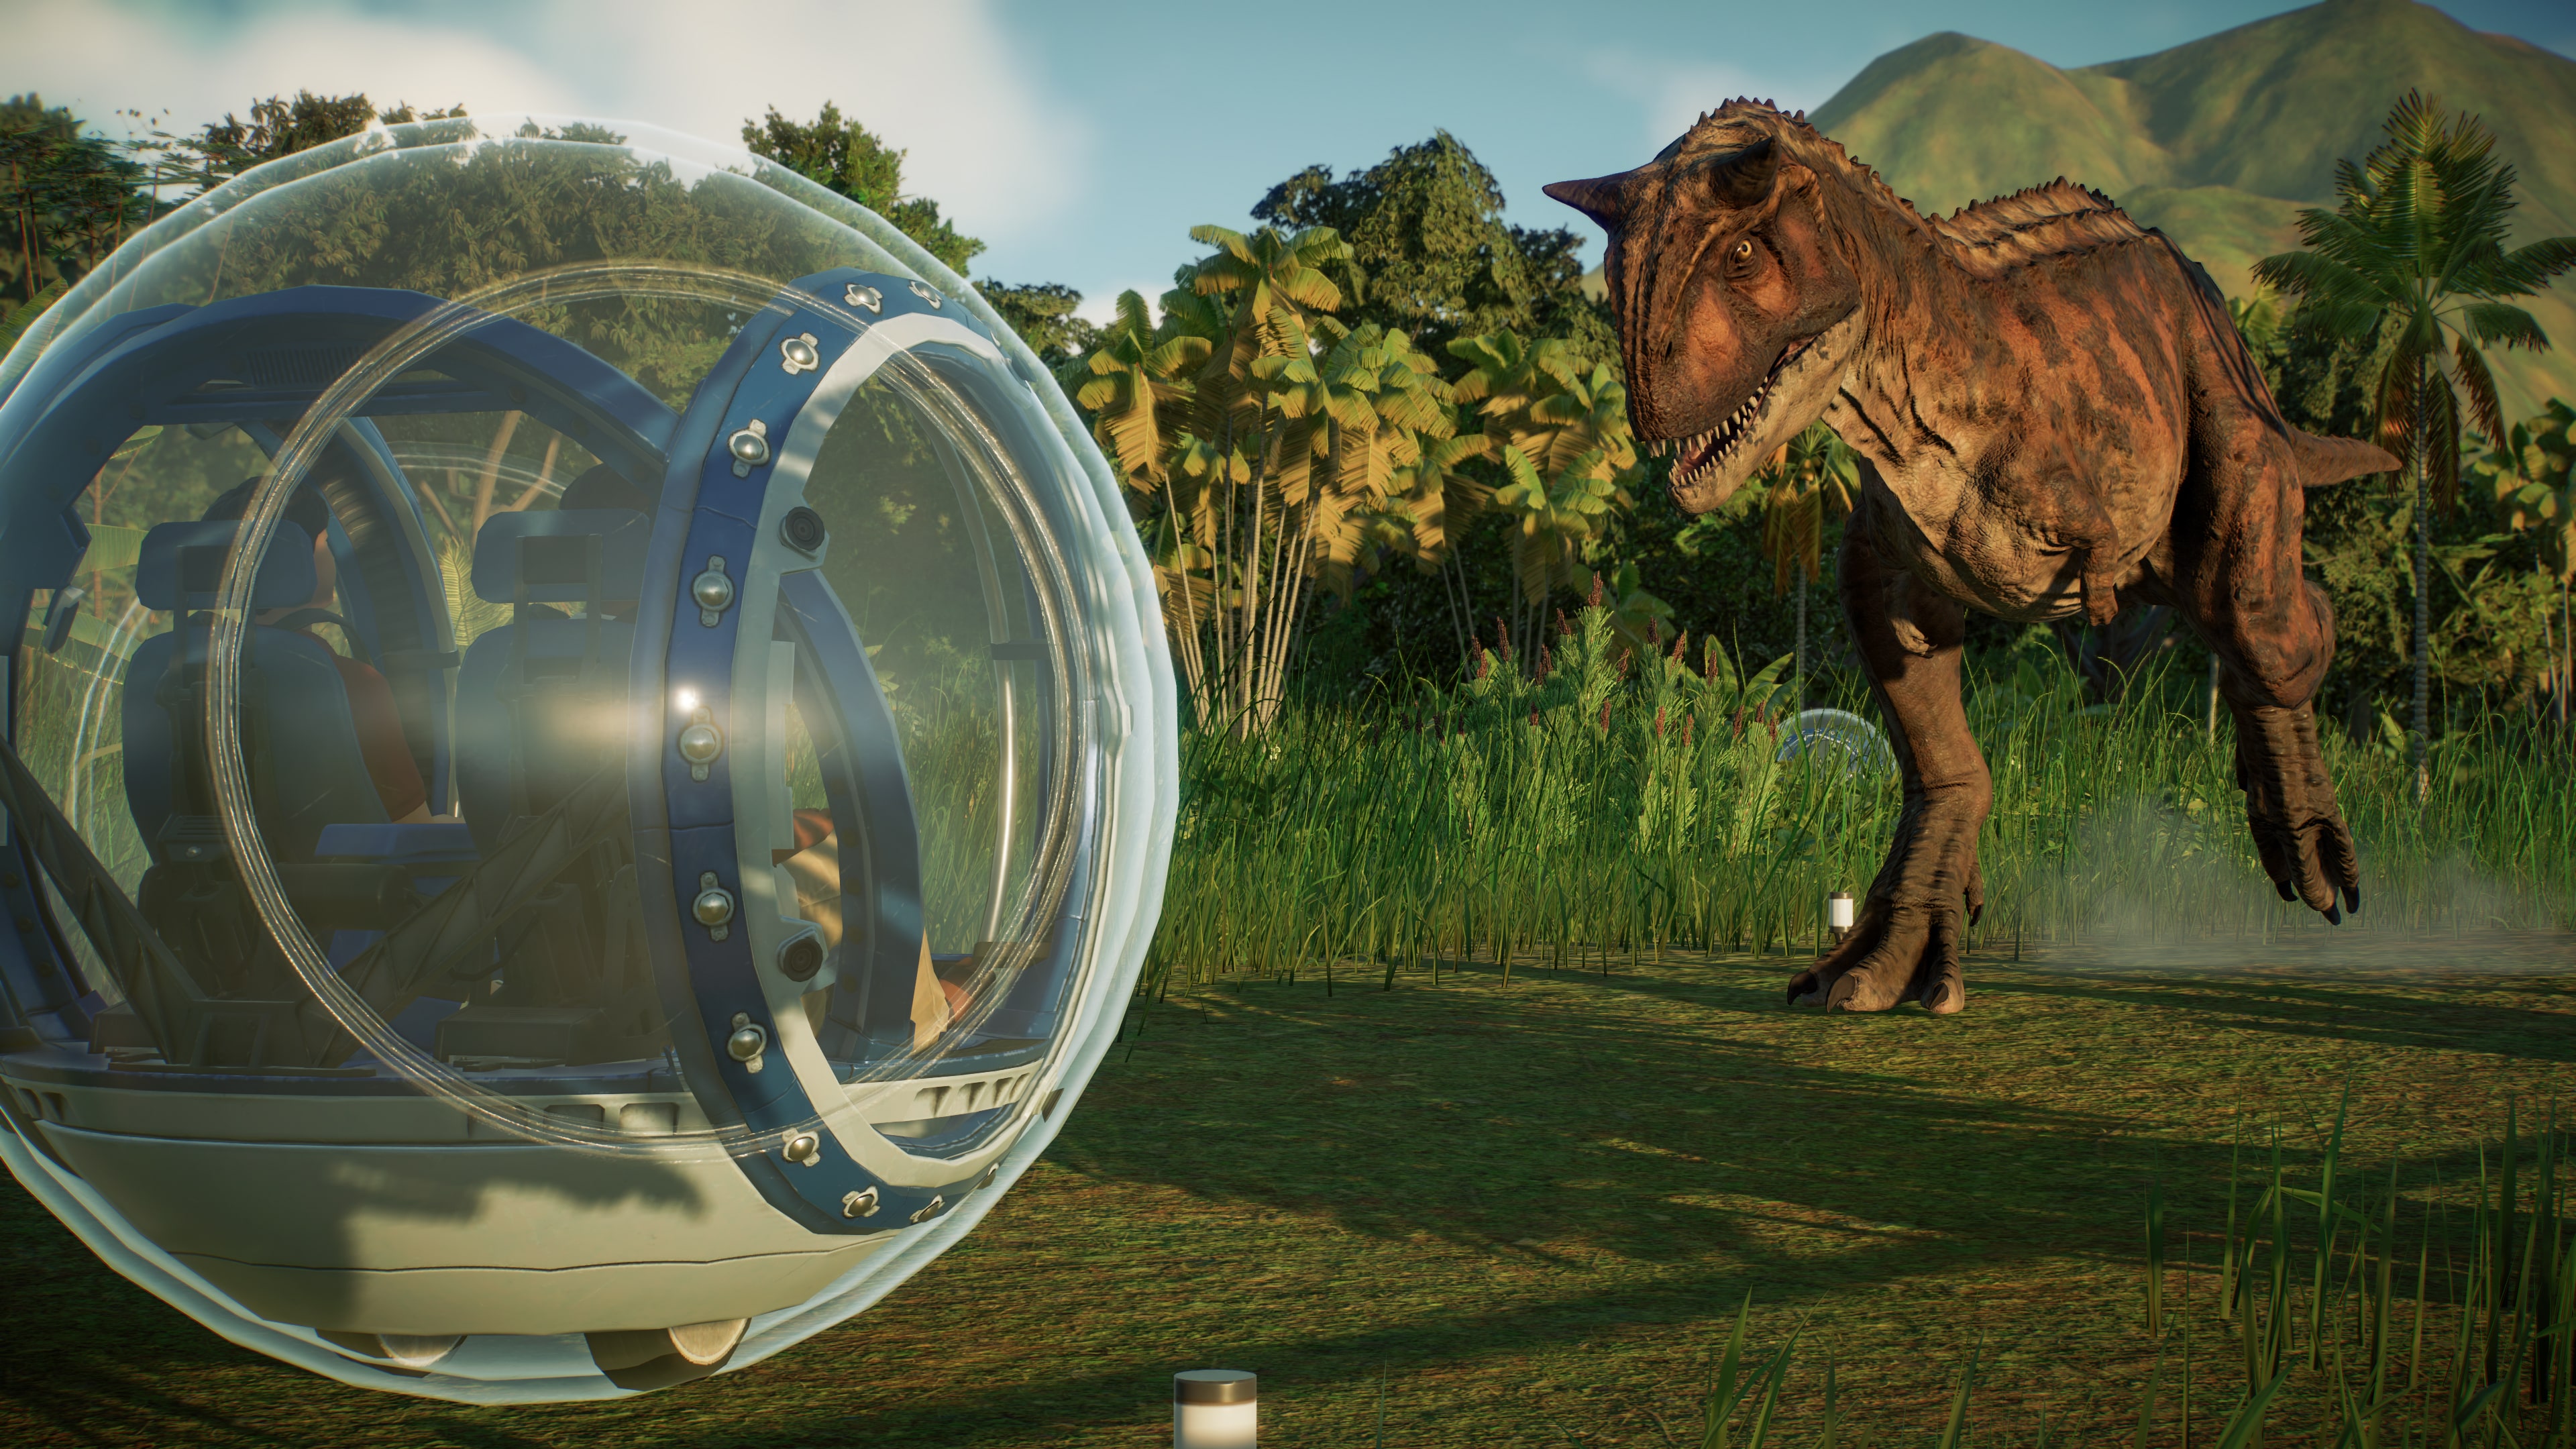 Jurassic World Evolution 2: Camp Cretaceous Dinosaur Pack em 8 de março de  2022 - XboxEra